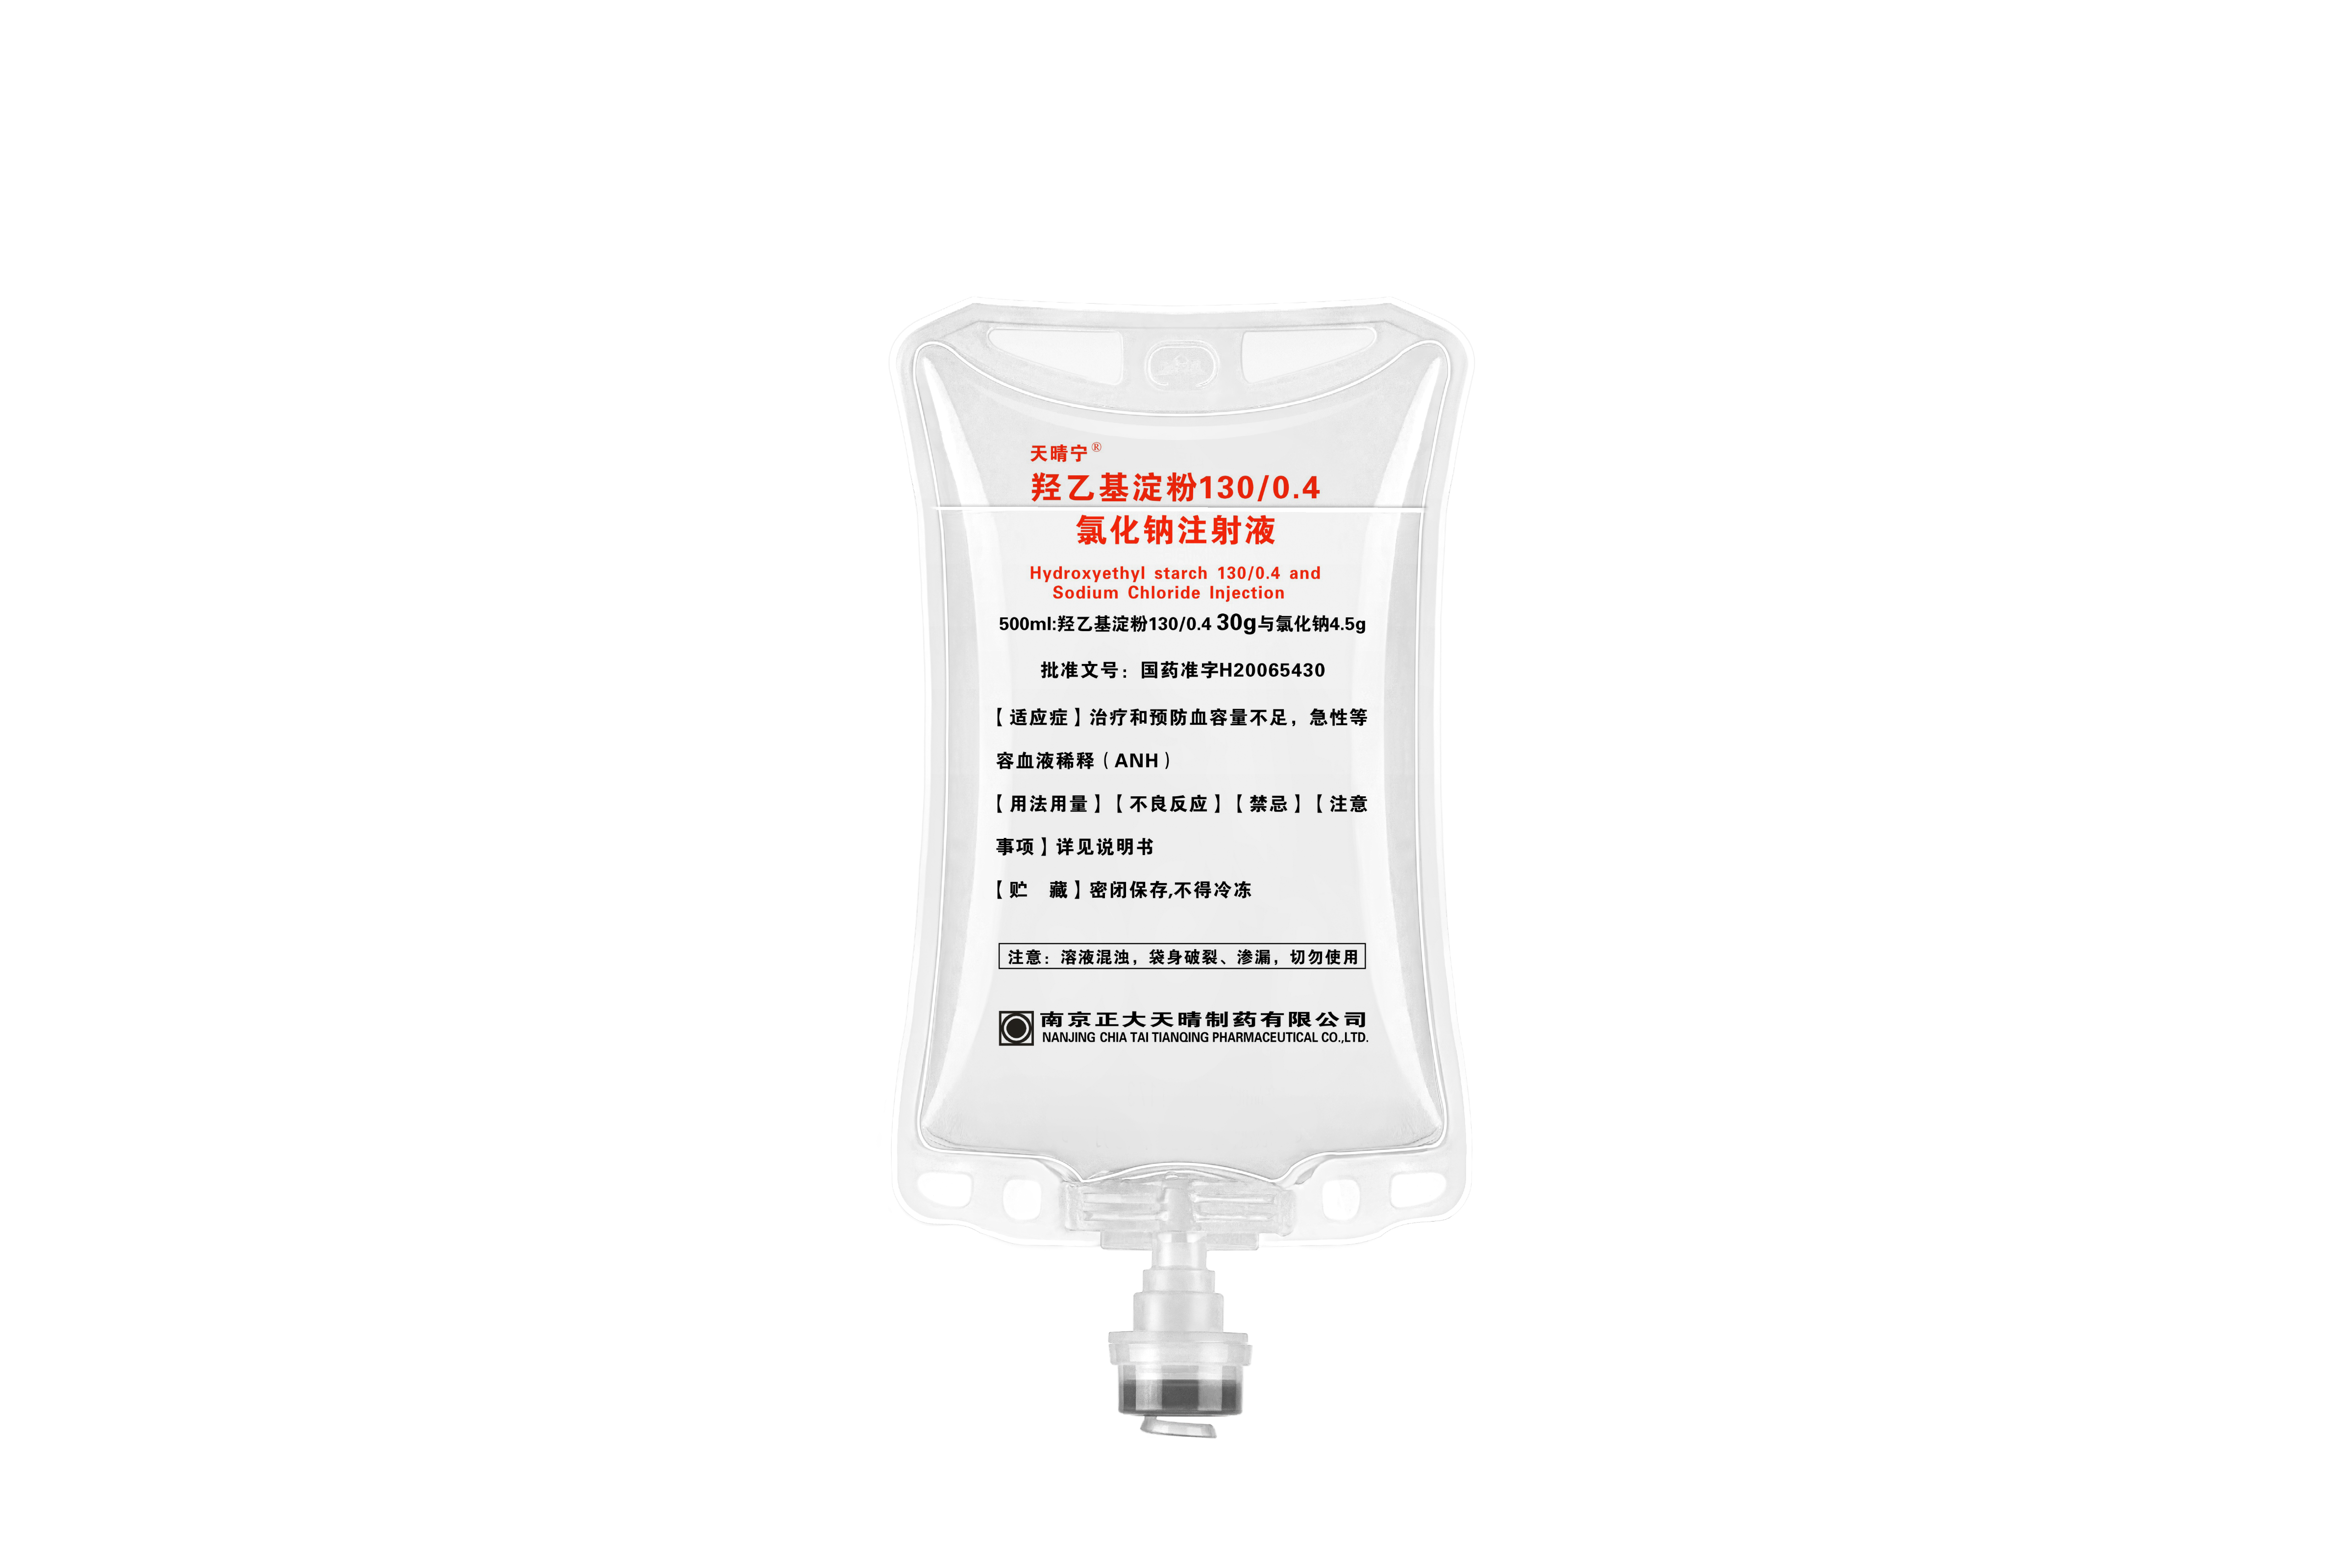 天晴宁® 羟乙基淀粉130/0.4氯化钠注射液